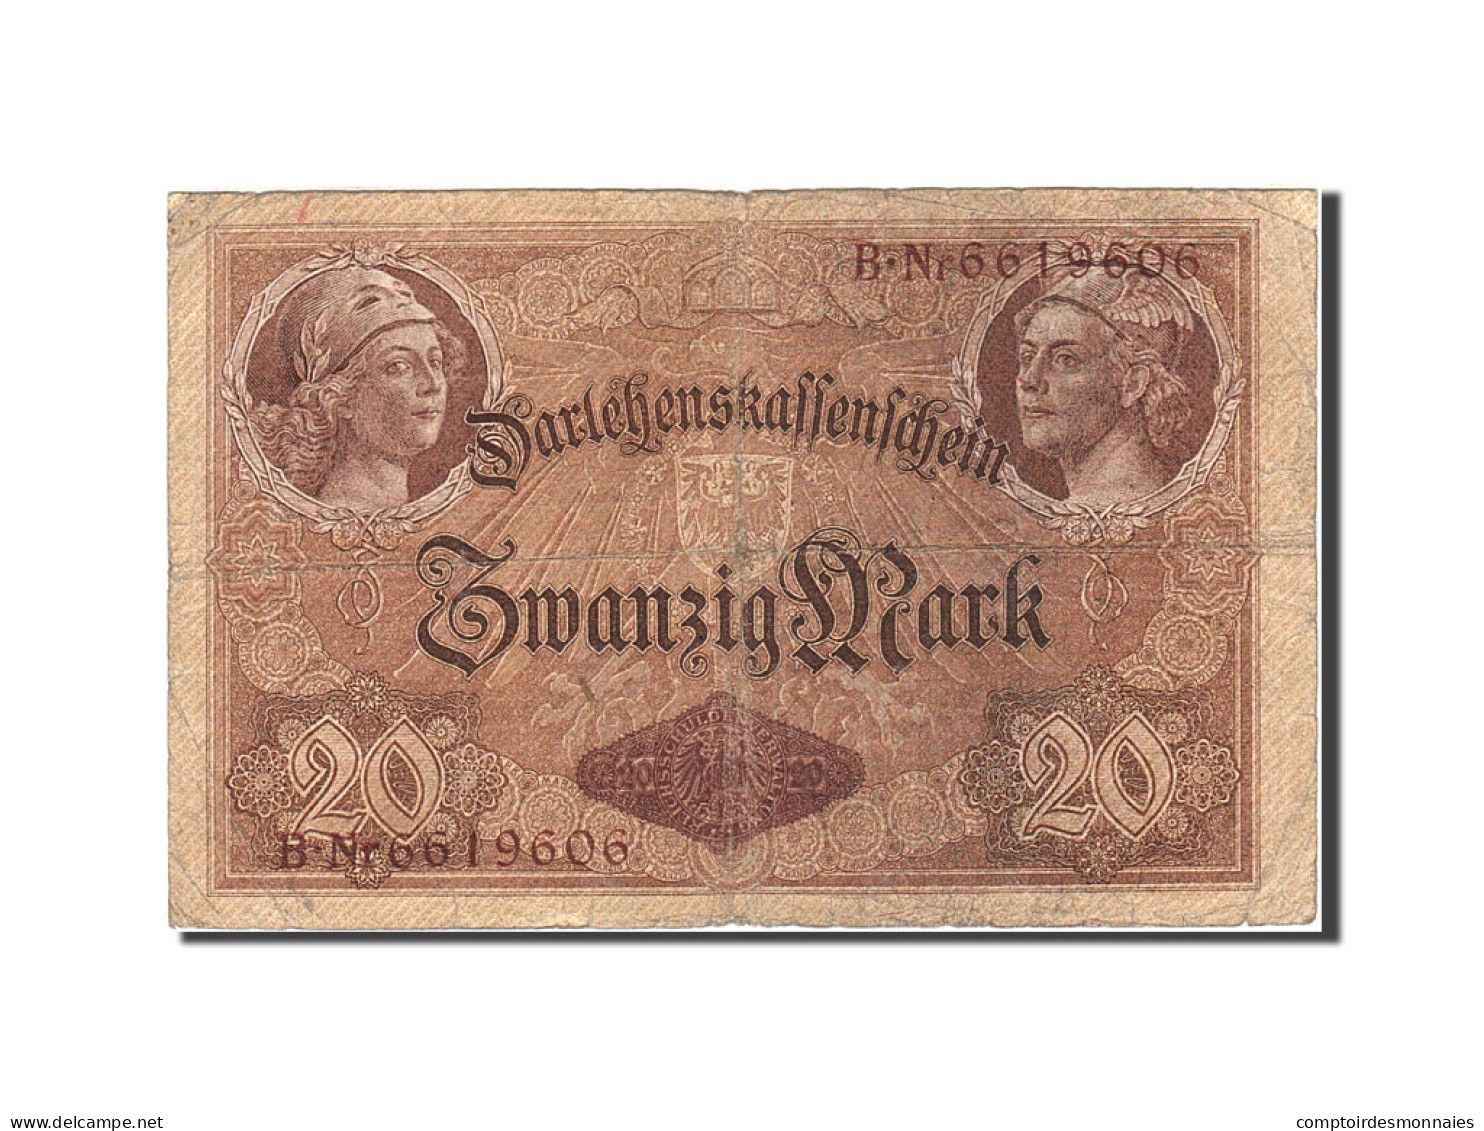 Billet, Allemagne, 20 Mark, 1914, 1914-08-05, KM:48b, B+ - 20 Mark